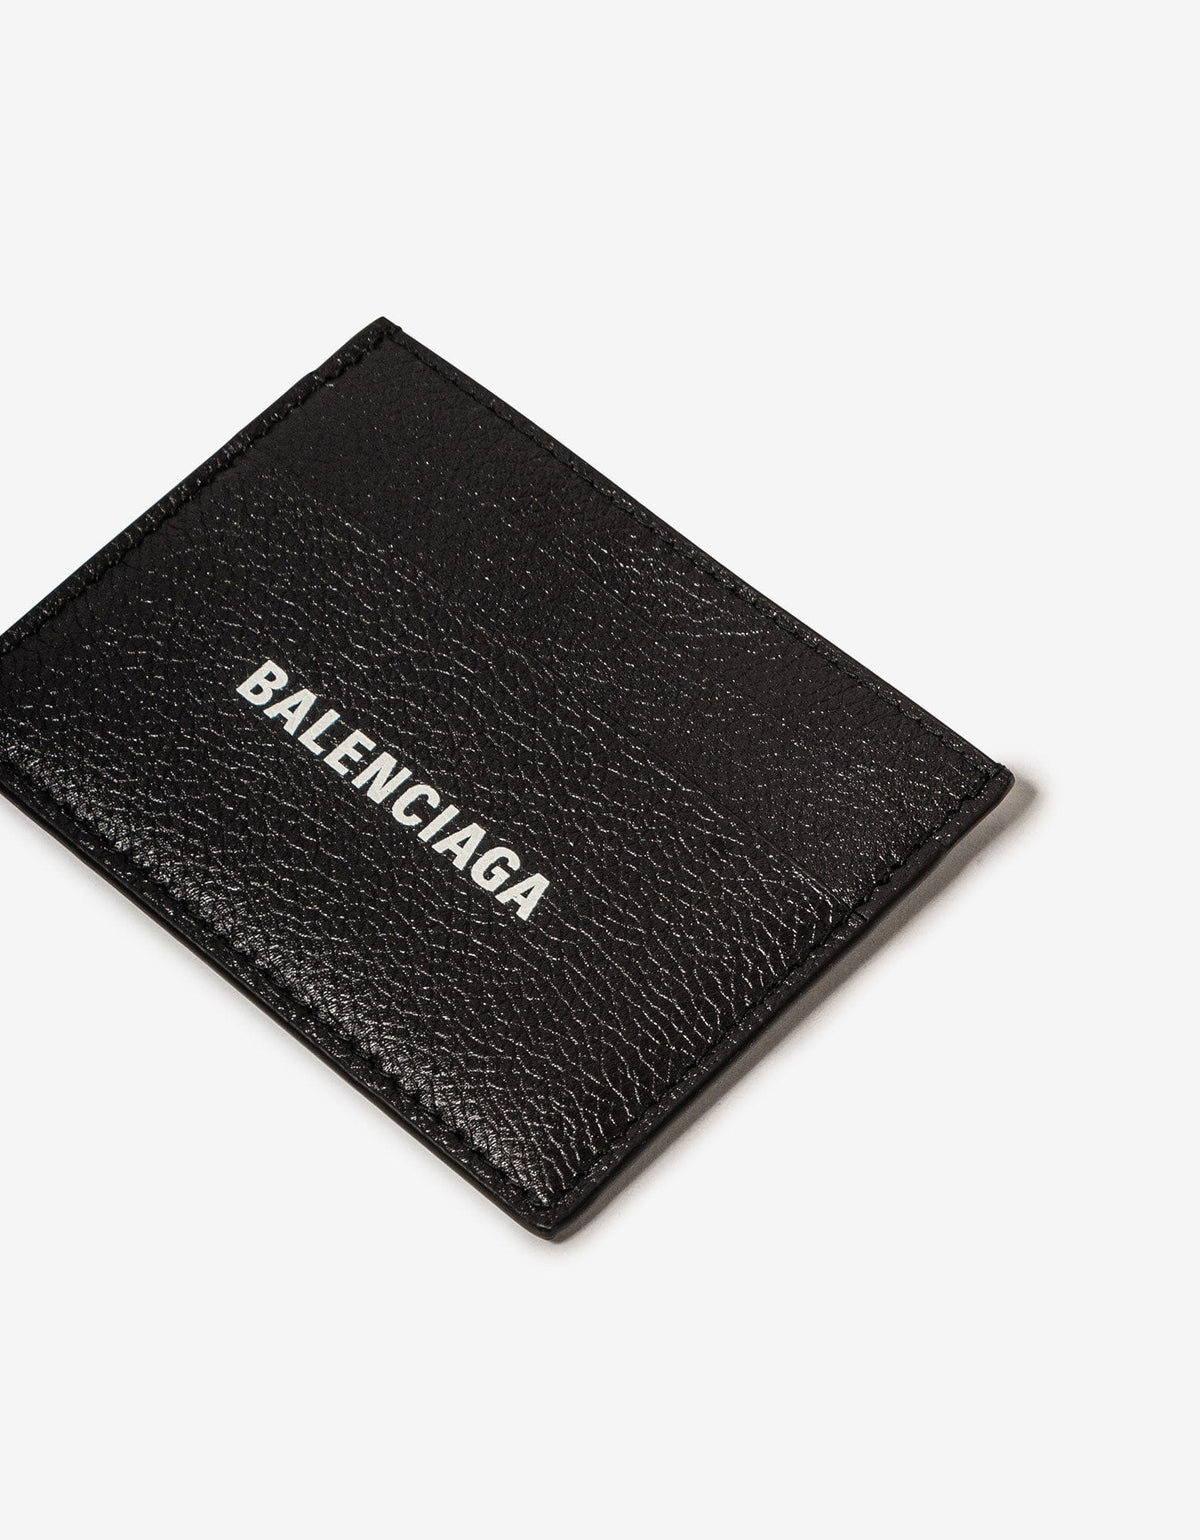 Balenciaga Black Logo Cash Card Holder